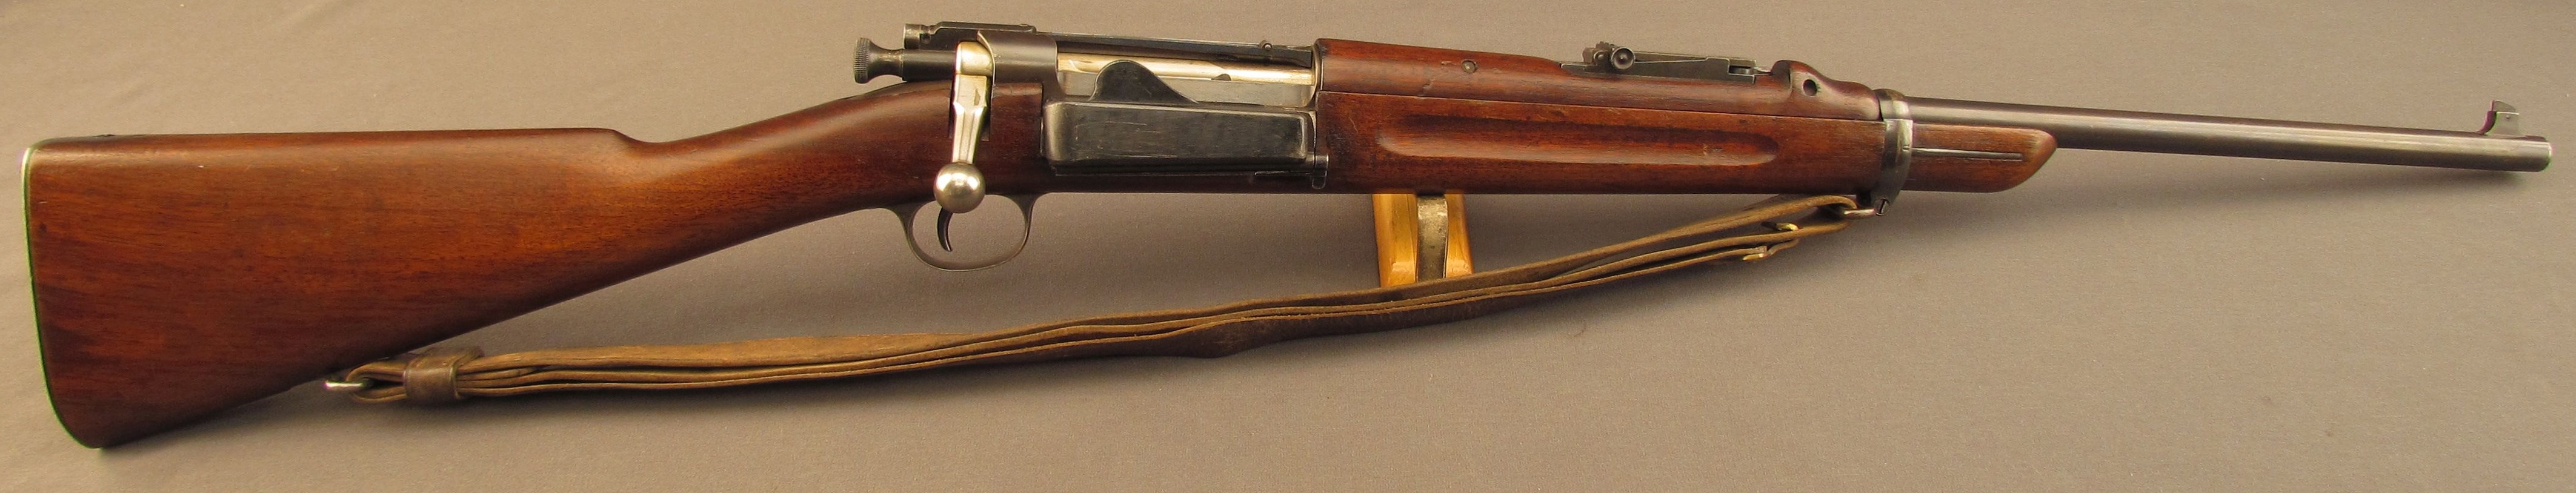 Carabine krag-Jorgensen 1899